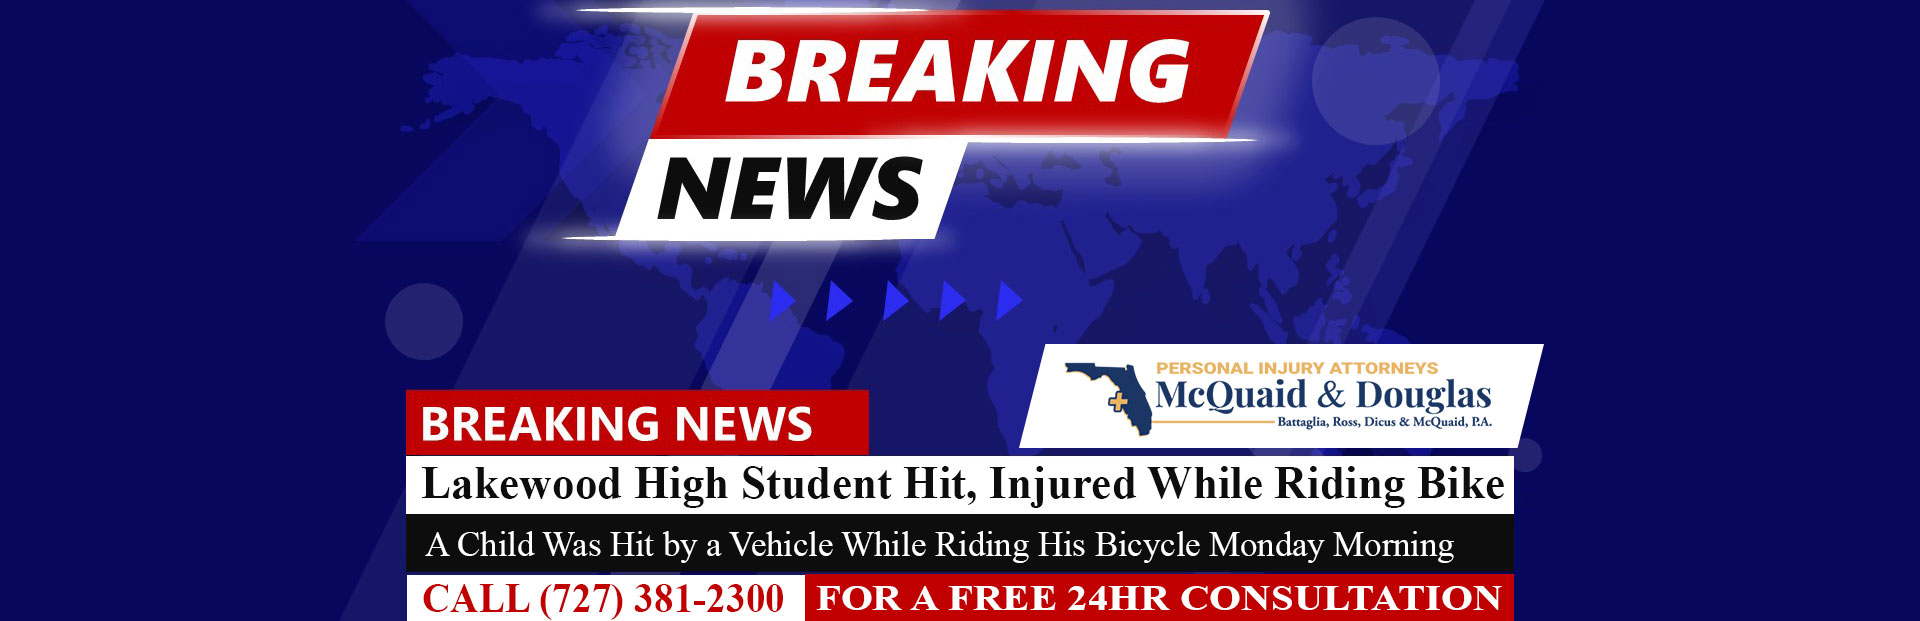 [04-10-23] Lakewood High Student Hit, Injured While Riding Bike